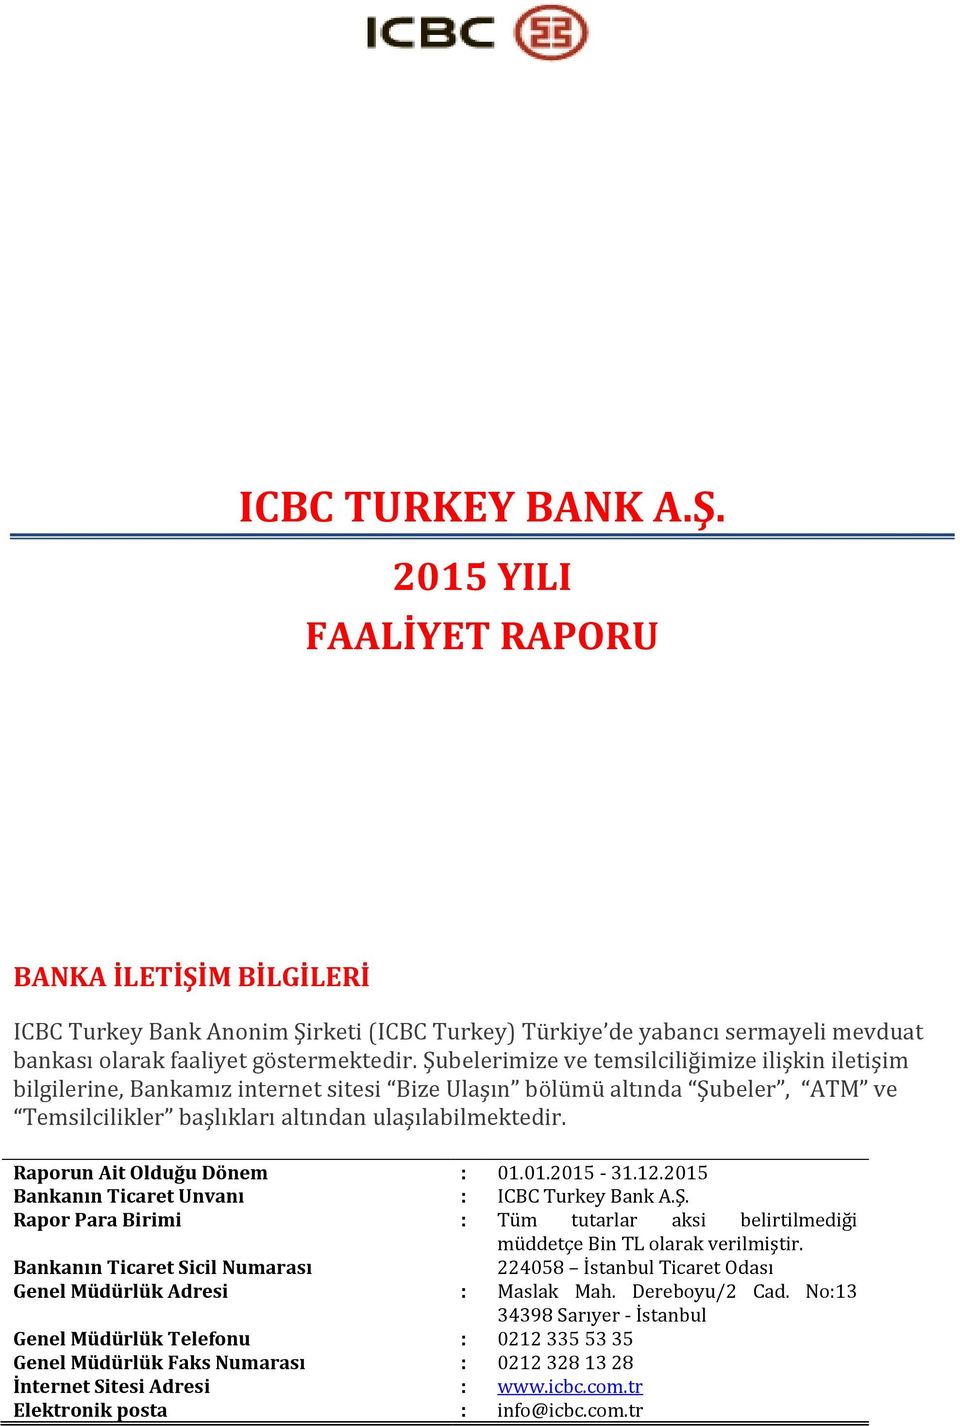 Raporun Ait Olduğu Dönem : 01.01.2015-31.12.2015 Bankanın Ticaret Unvanı : ICBC Turkey Bank A.Ş. Rapor Para Birimi : Tüm tutarlar aksi belirtilmediği müddetçe Bin TL olarak verilmiştir.